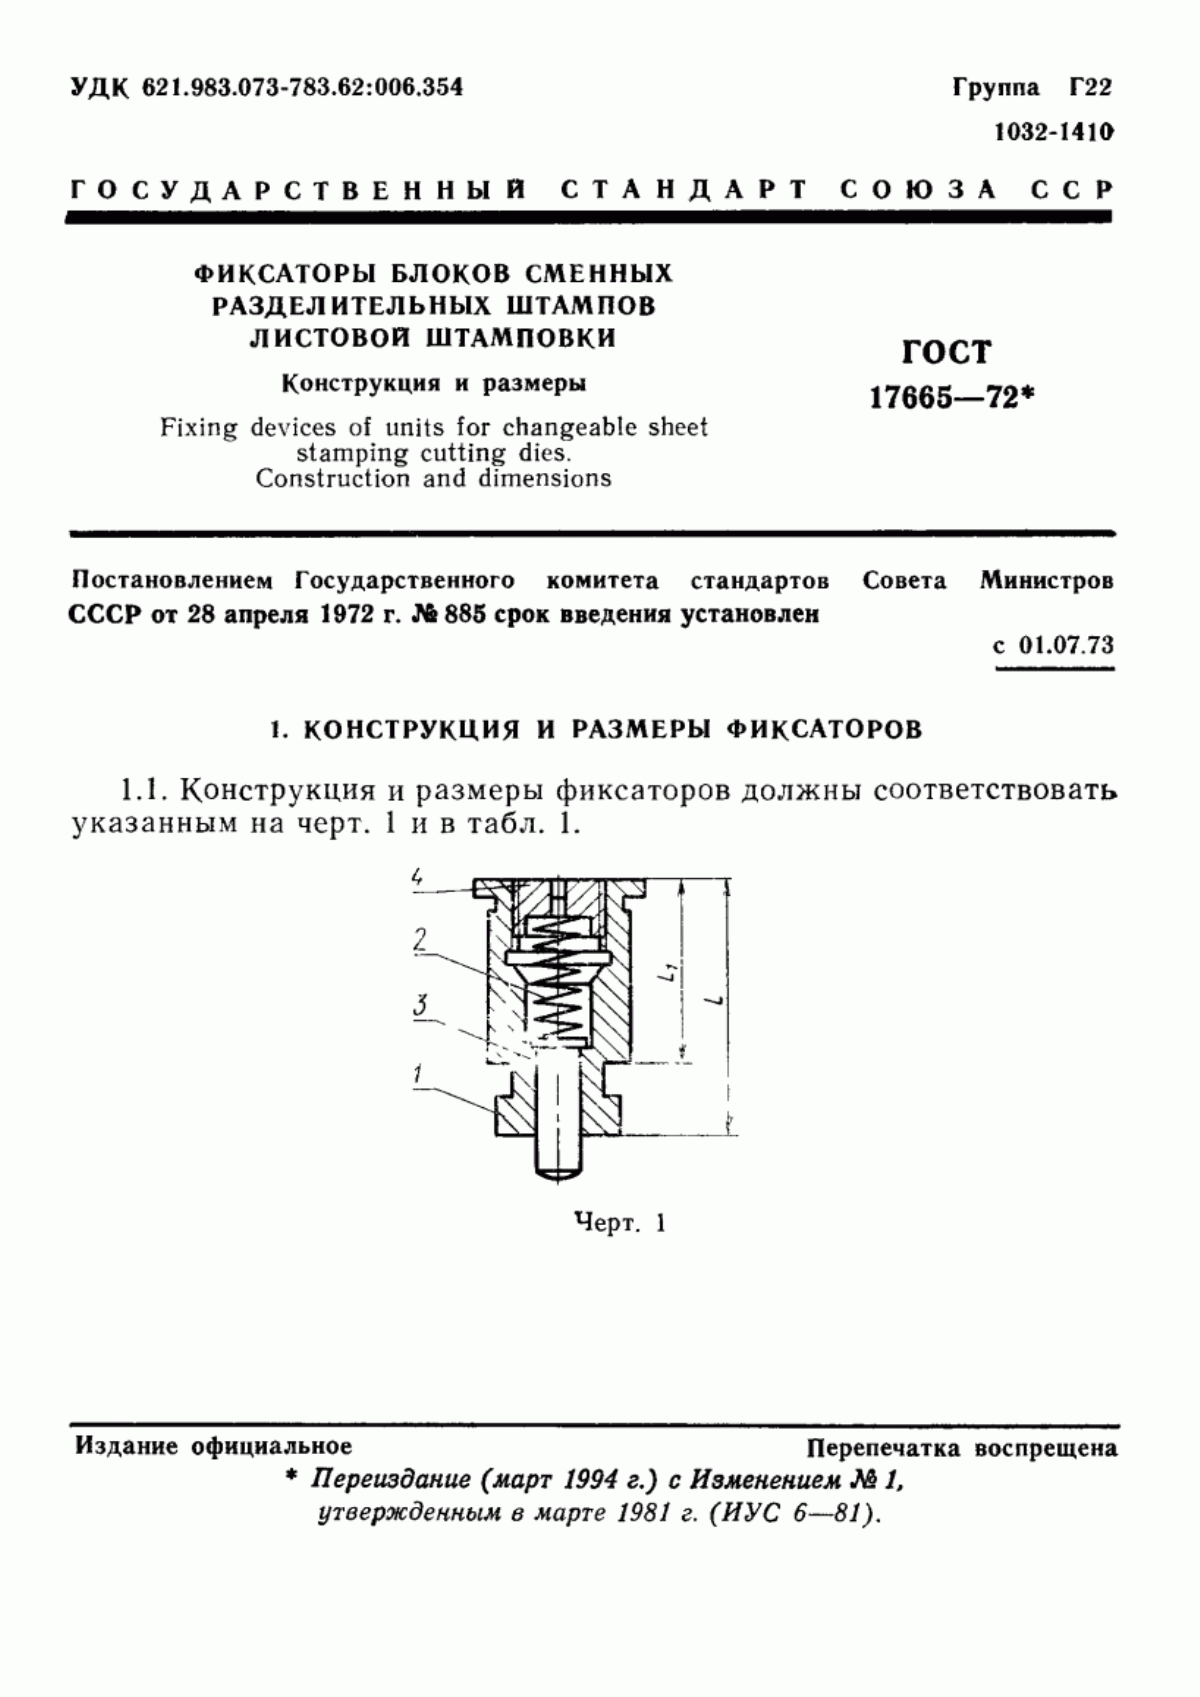 ГОСТ 17665-72 Фиксаторы блоков сменных разделительных штампов листовой штамповки. Конструкция и размеры